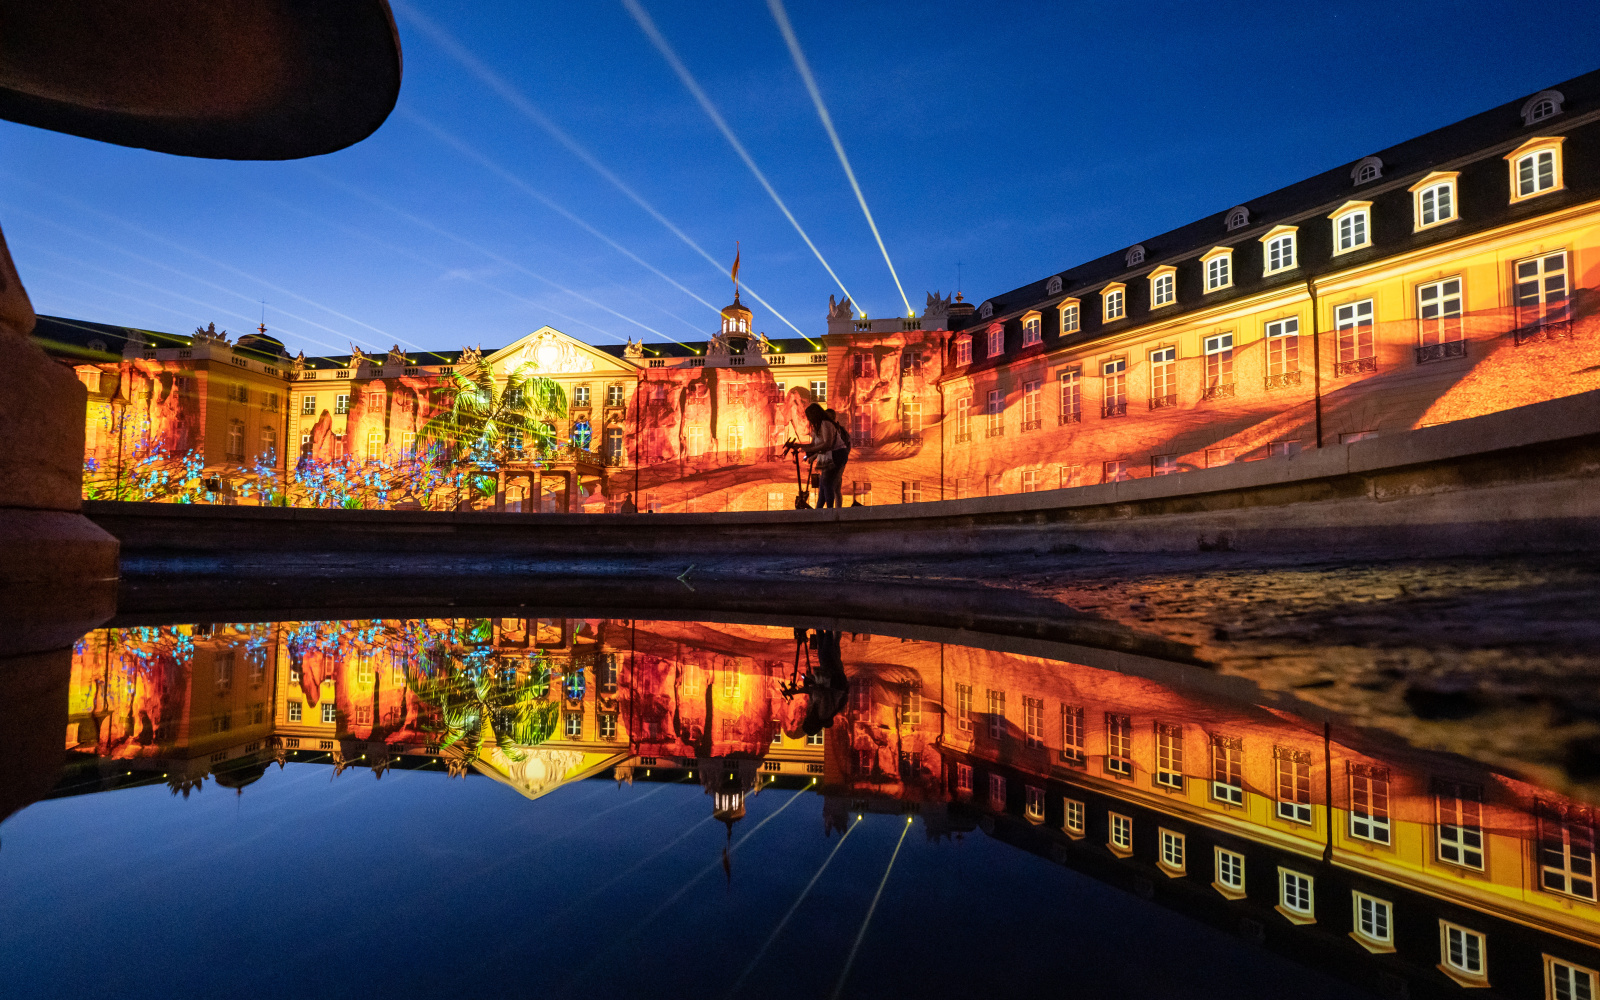 Zu sehen ist die beleuchtete Fassade des Karlsruher Barockschlosses in den Farben Orange und Gelb.